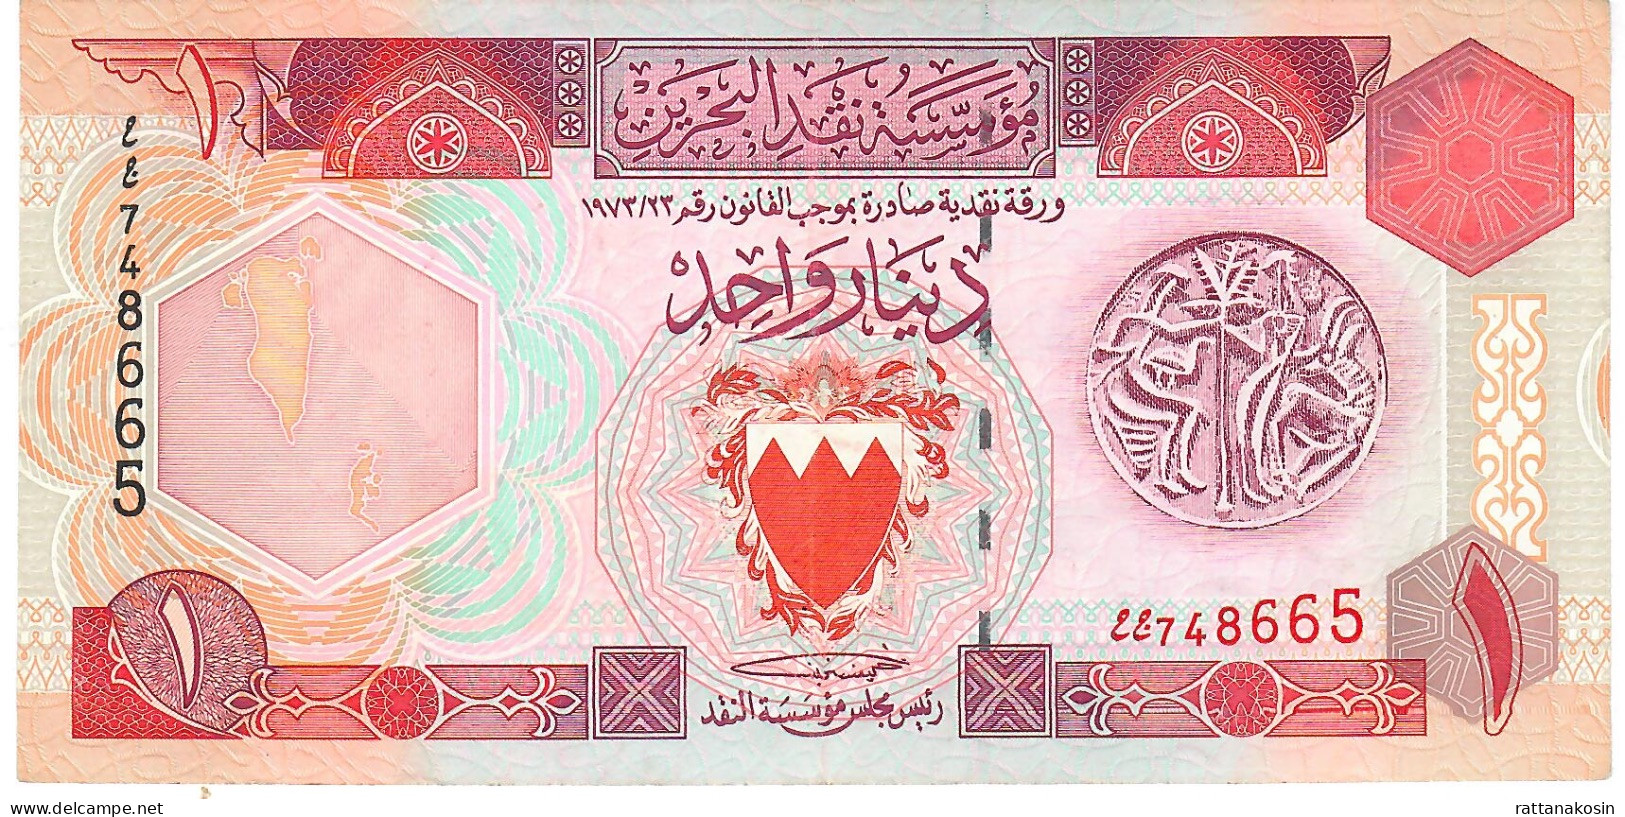 BAHRAIN P13 1 DINAR 1973 Issued 1993 AU++/UNC. - Bahrain